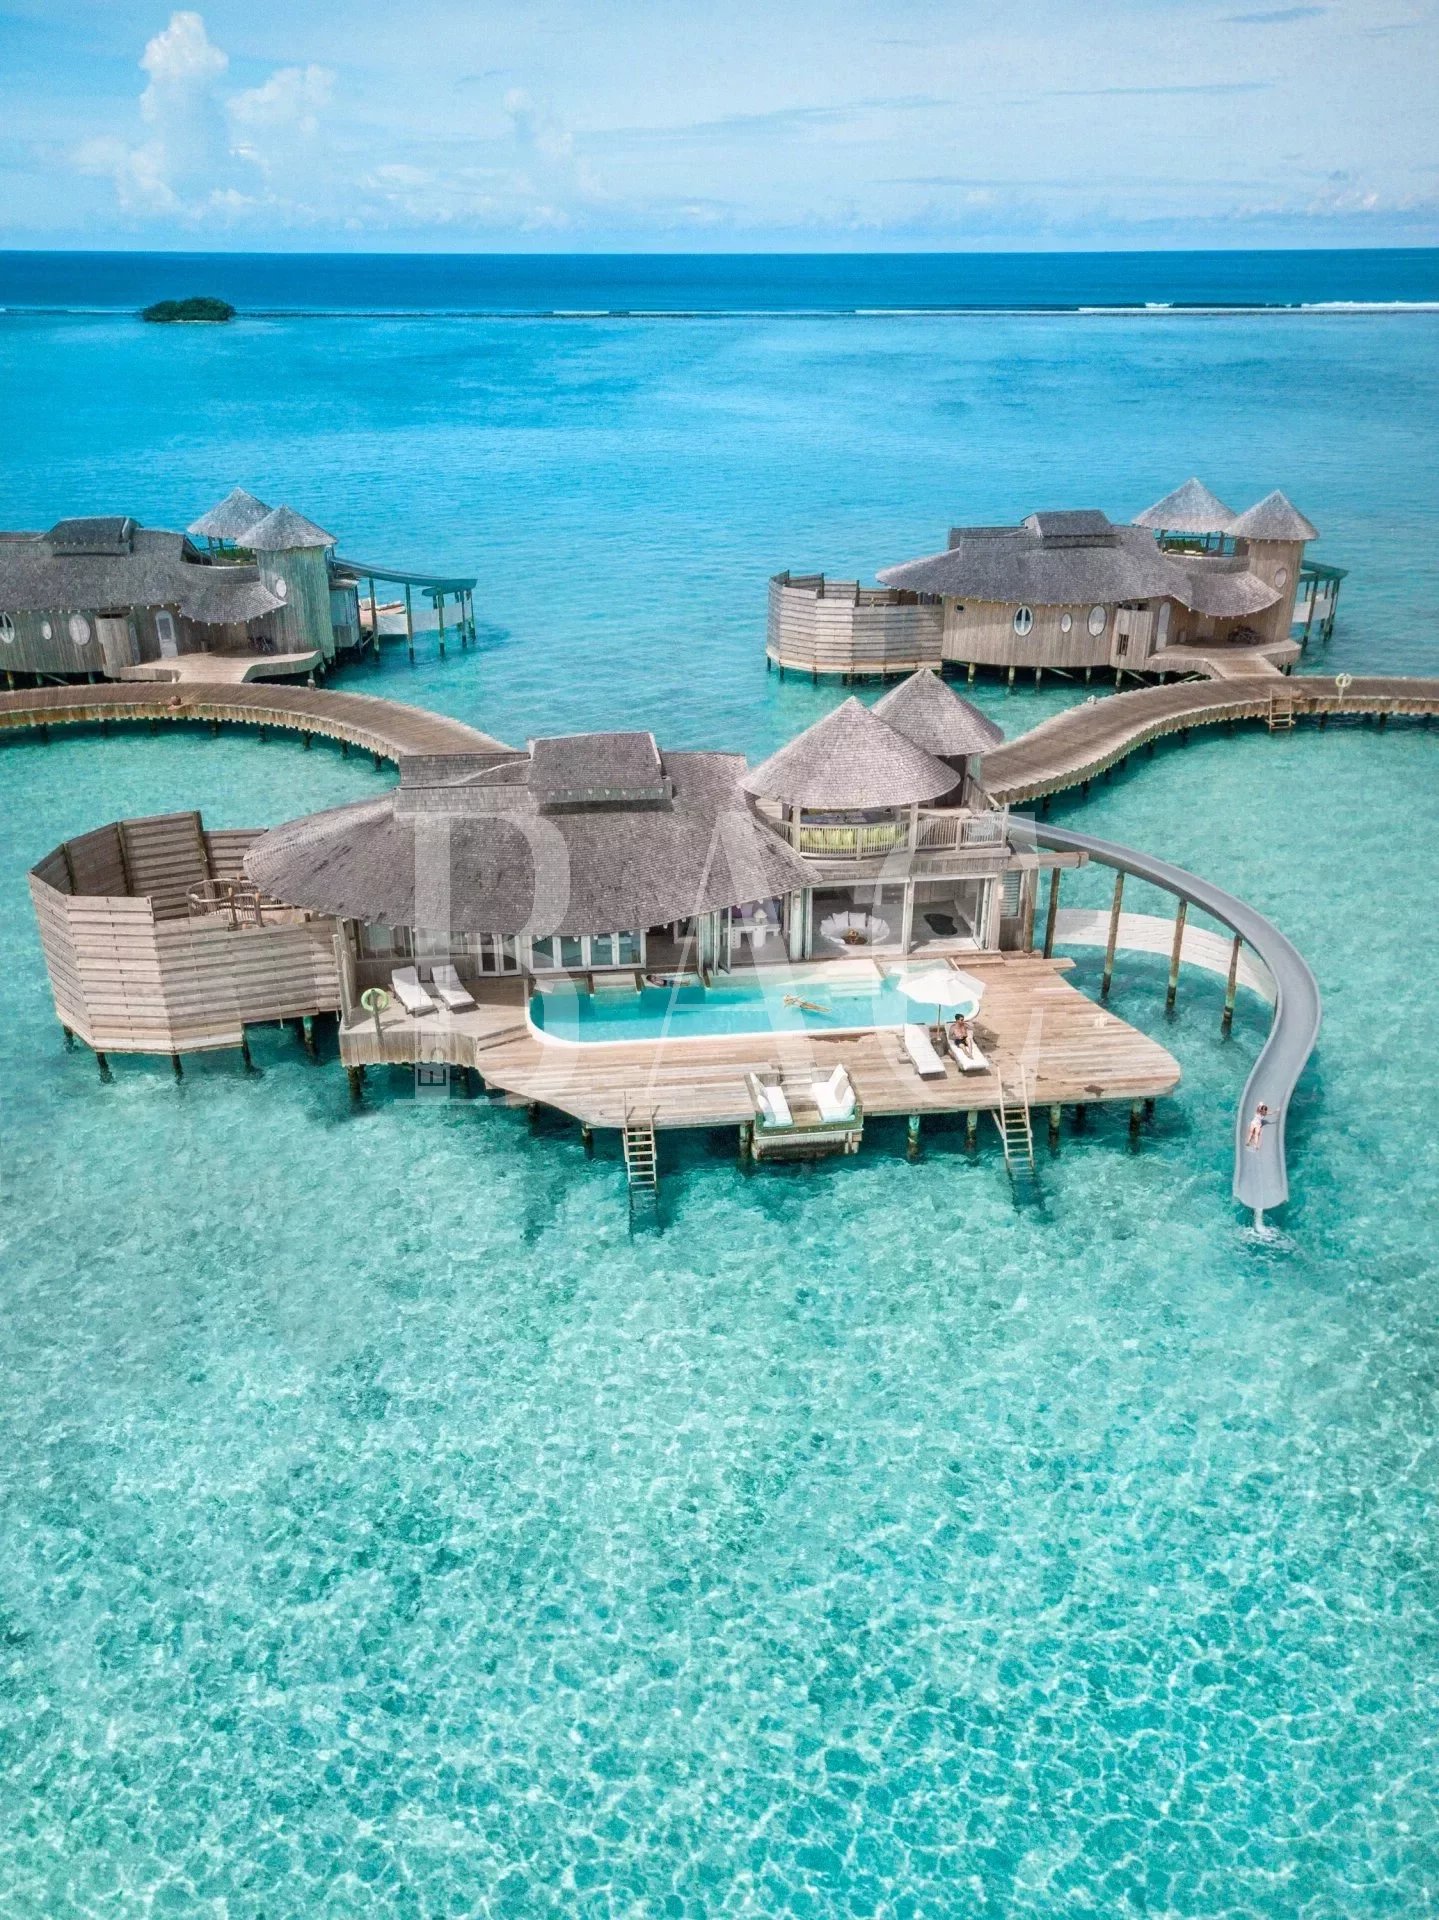 Stilt villa in the Maldives